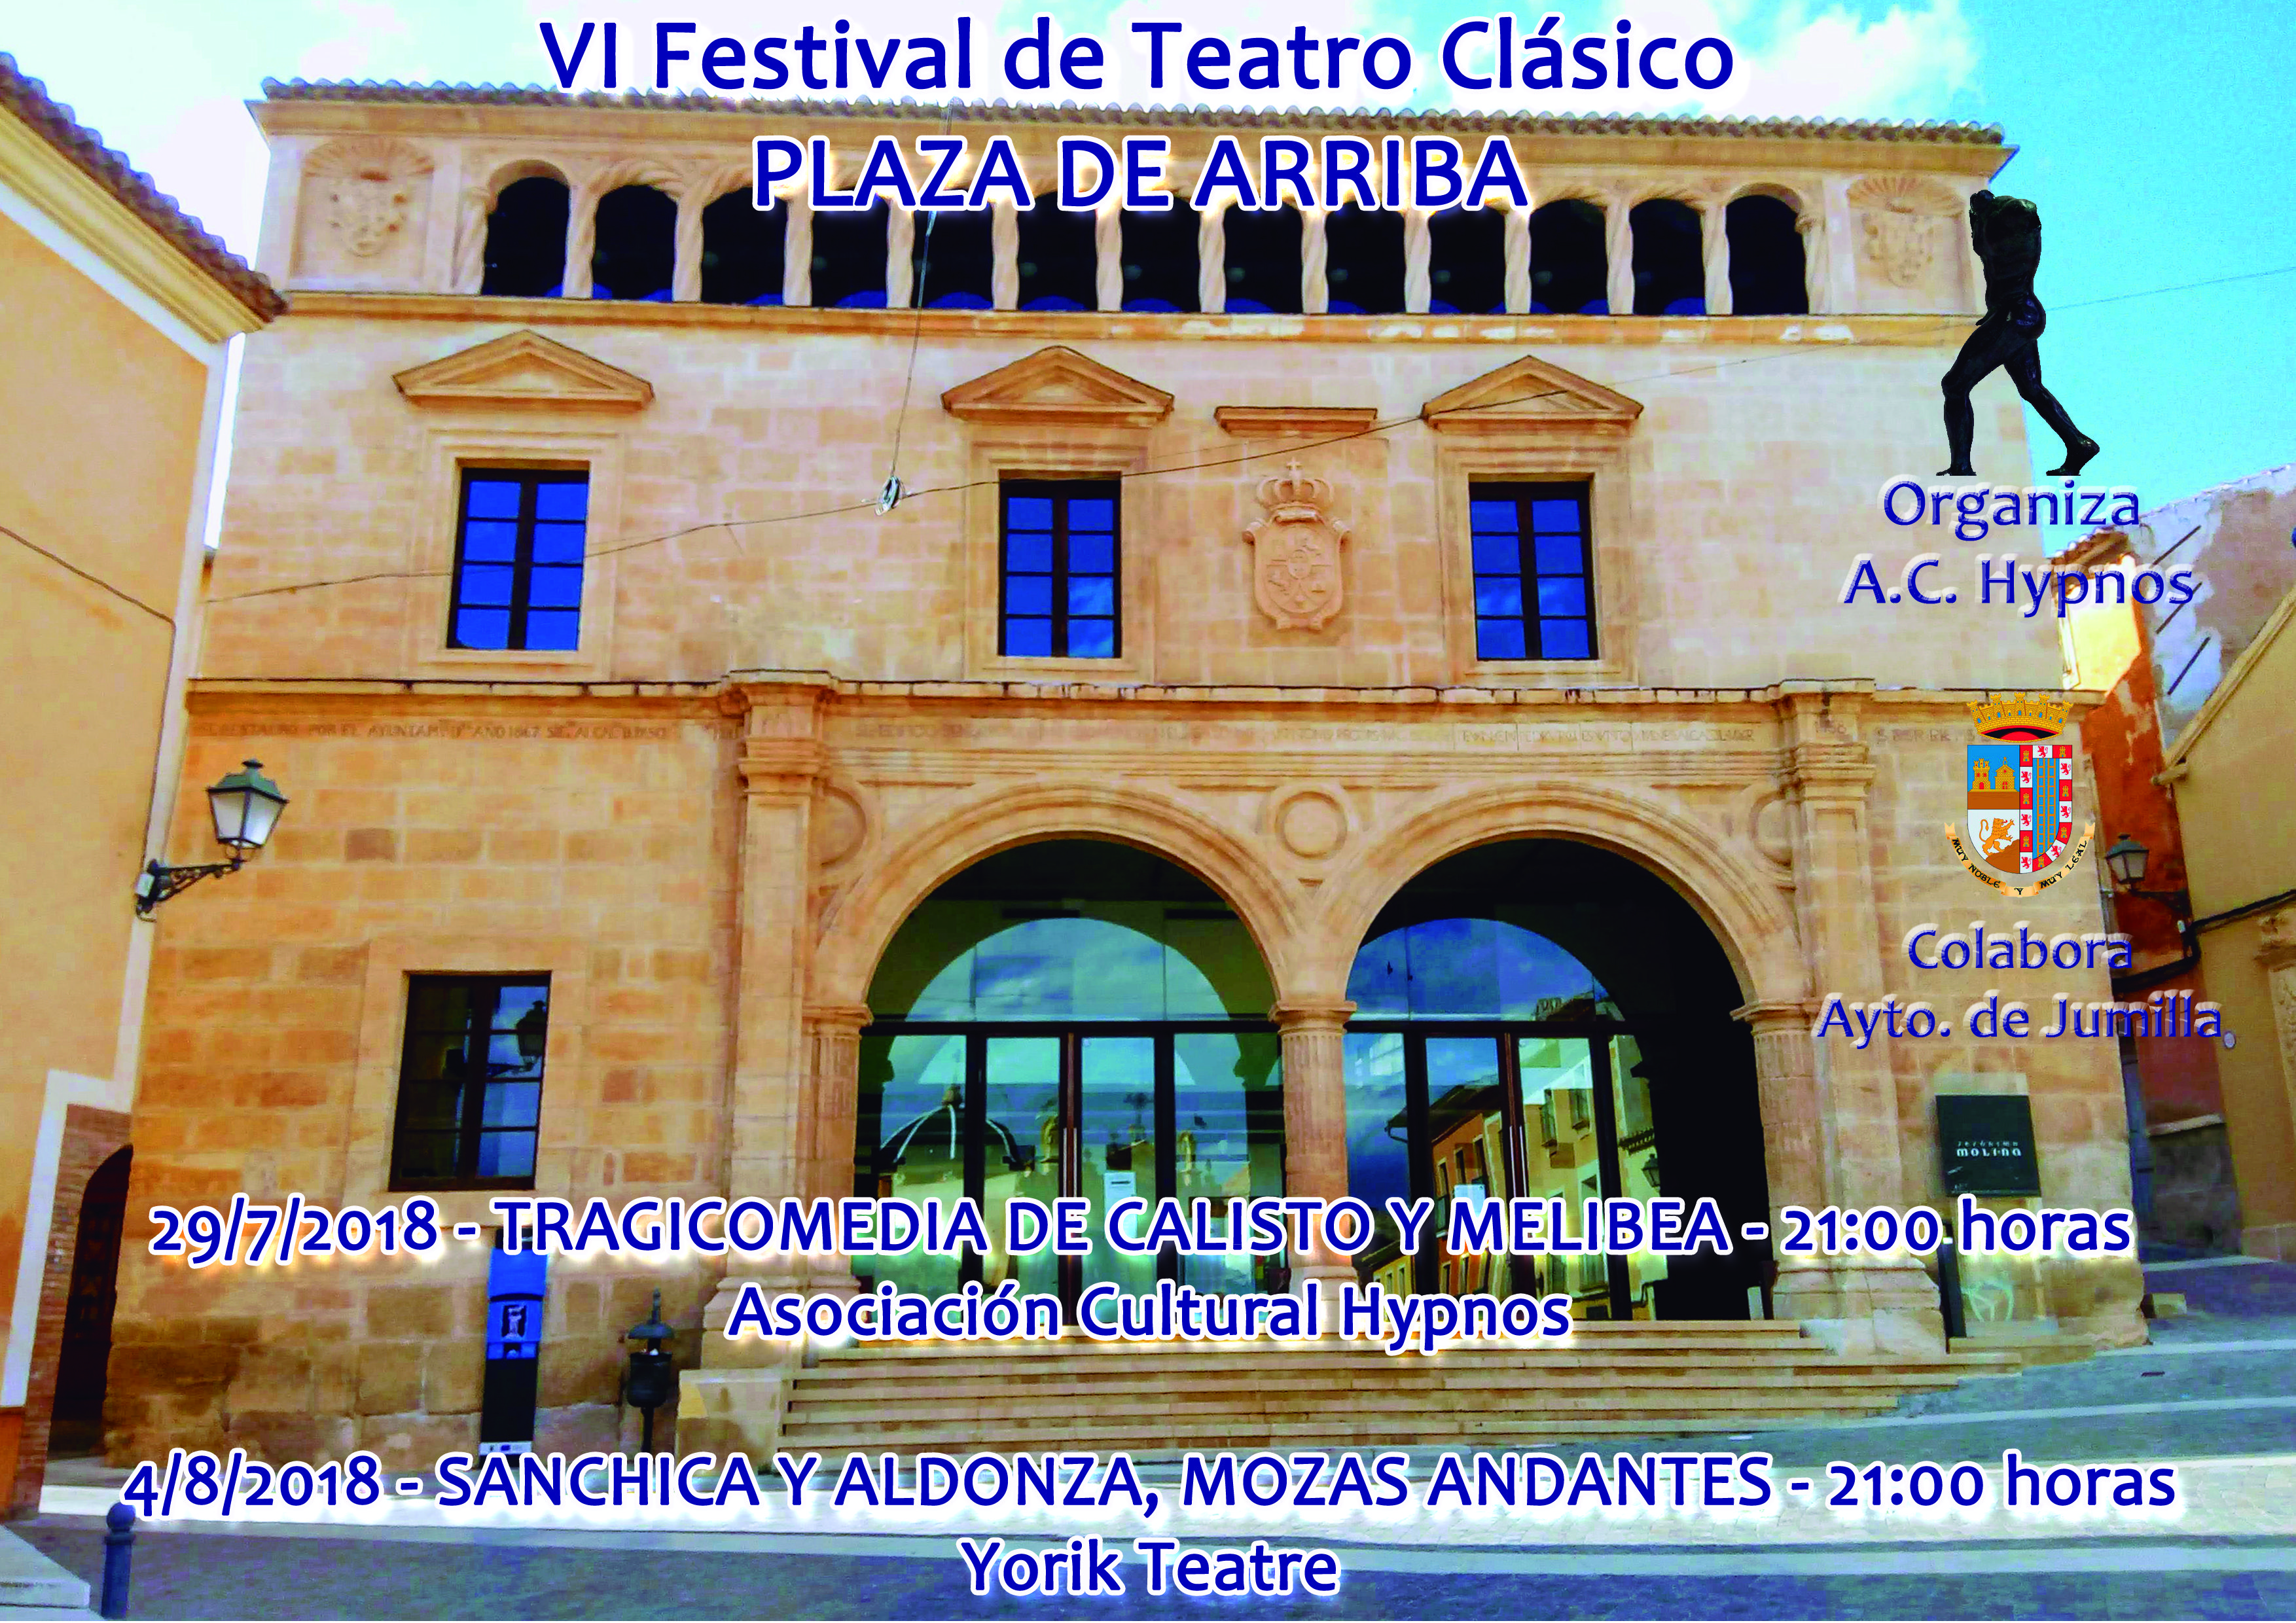 La Asociación Hypnos pone en marcha el VI Festival de Teatro Clásico en la Plaza de Arriba